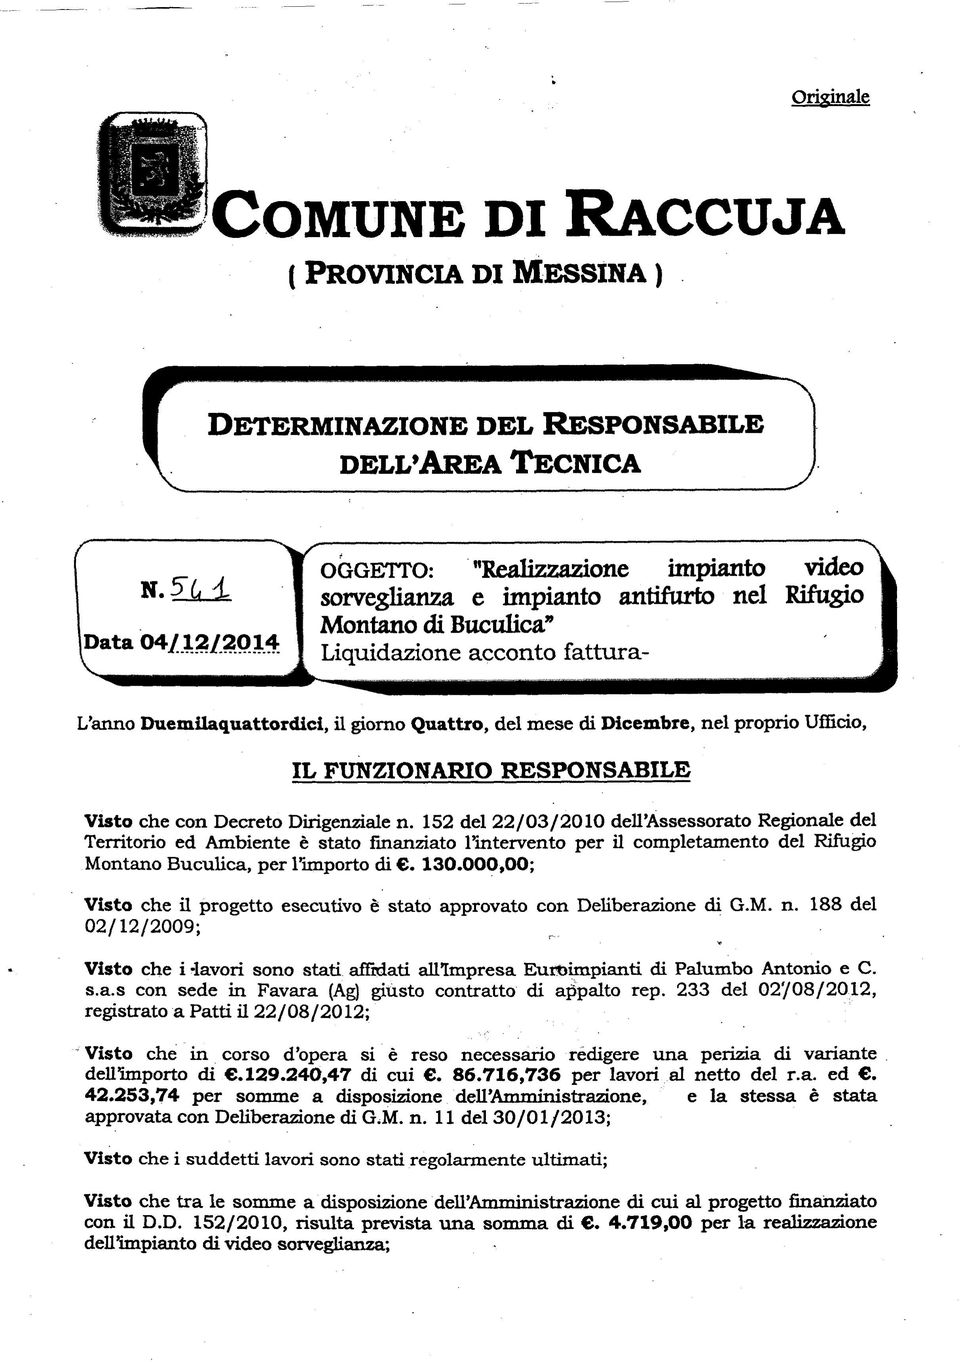 Dirigenziale n. 152 del 22/03/2010 dell'assessorato Regionale del Territorio ed Ambiente è stato finanziato intervento per il completamento del Rifugio Montano Buculica, per l'importo di. 130.